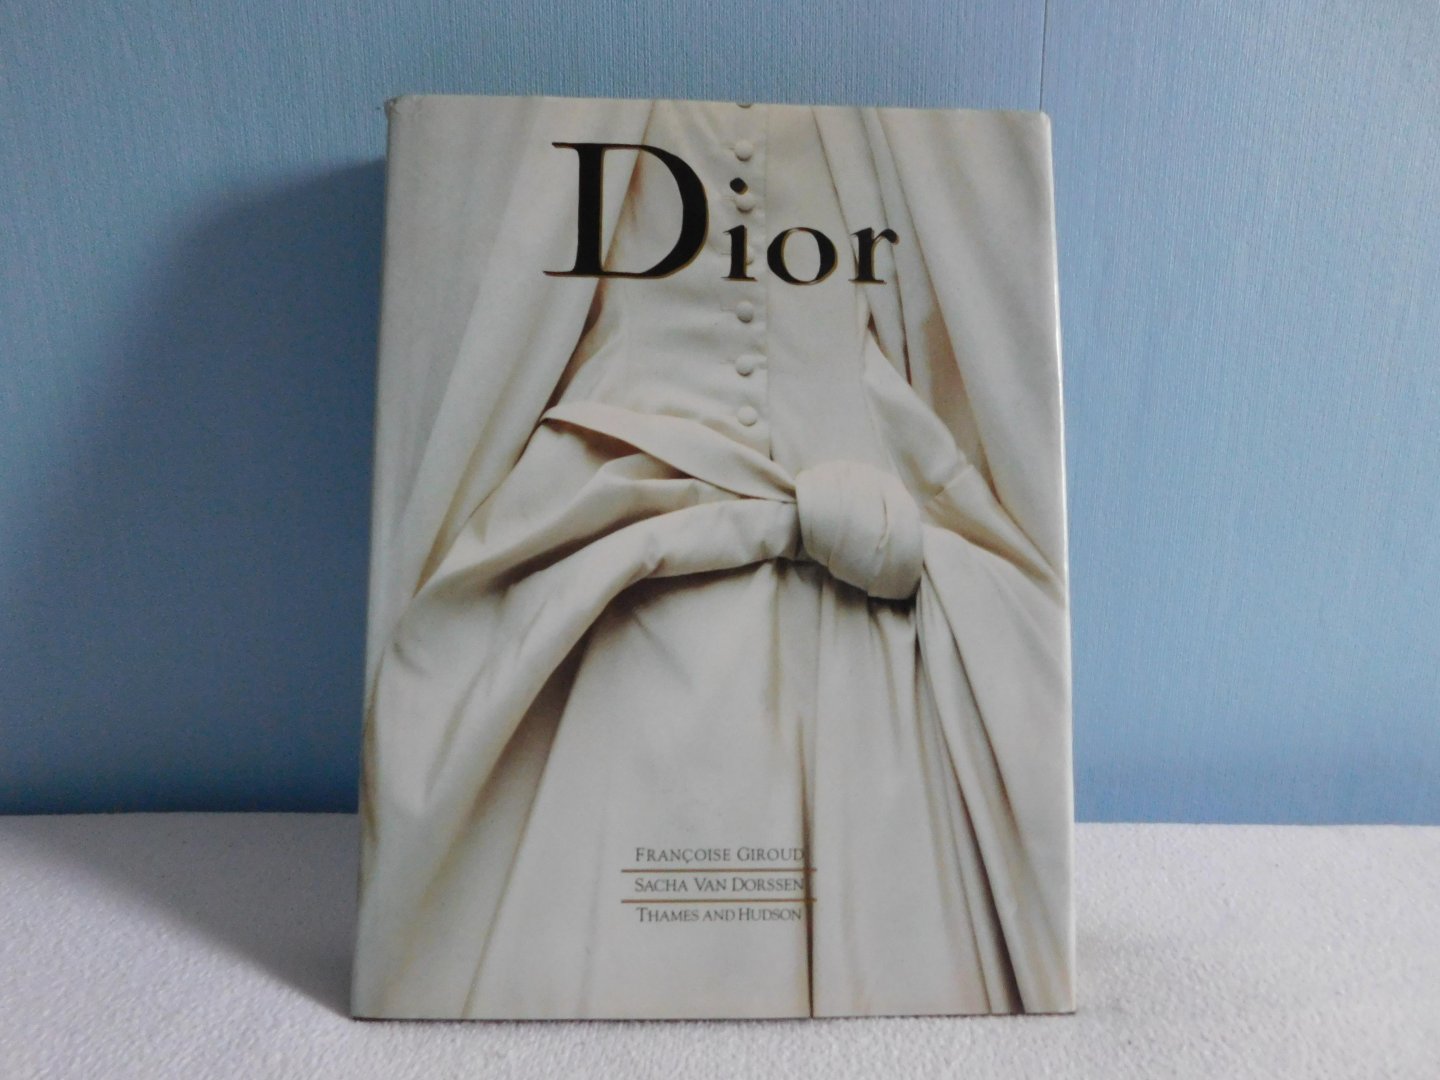 Giroud-van Dorssen - Dior